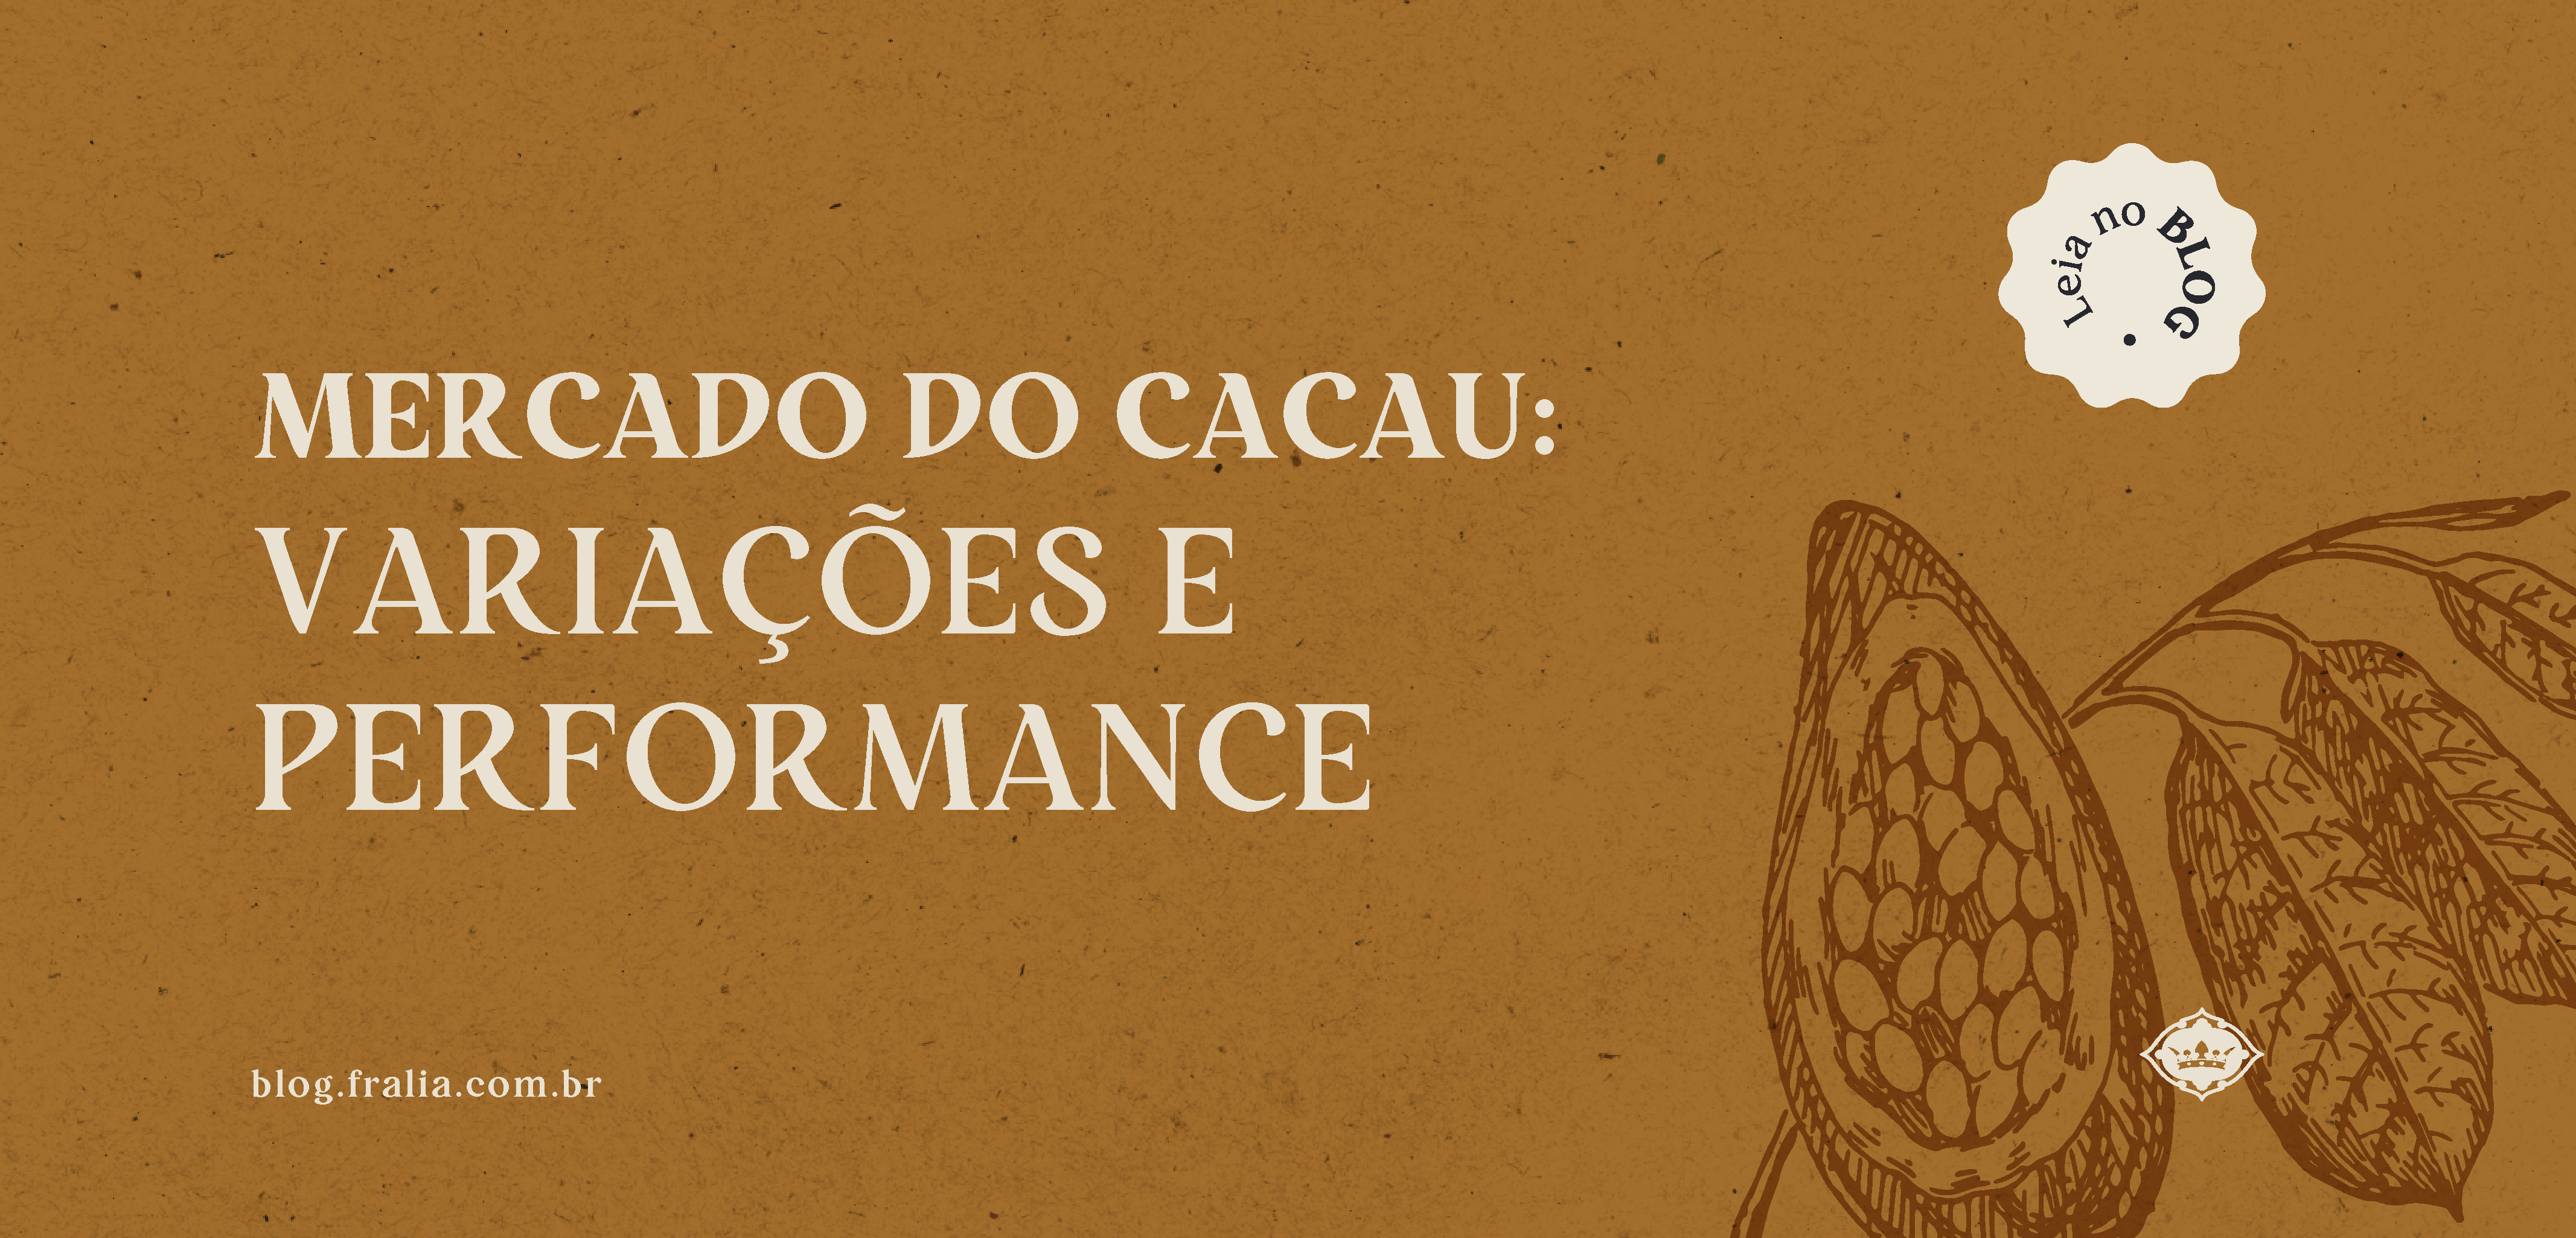 FRA_0901_ Mercado do Cacau_variações e performance_blog